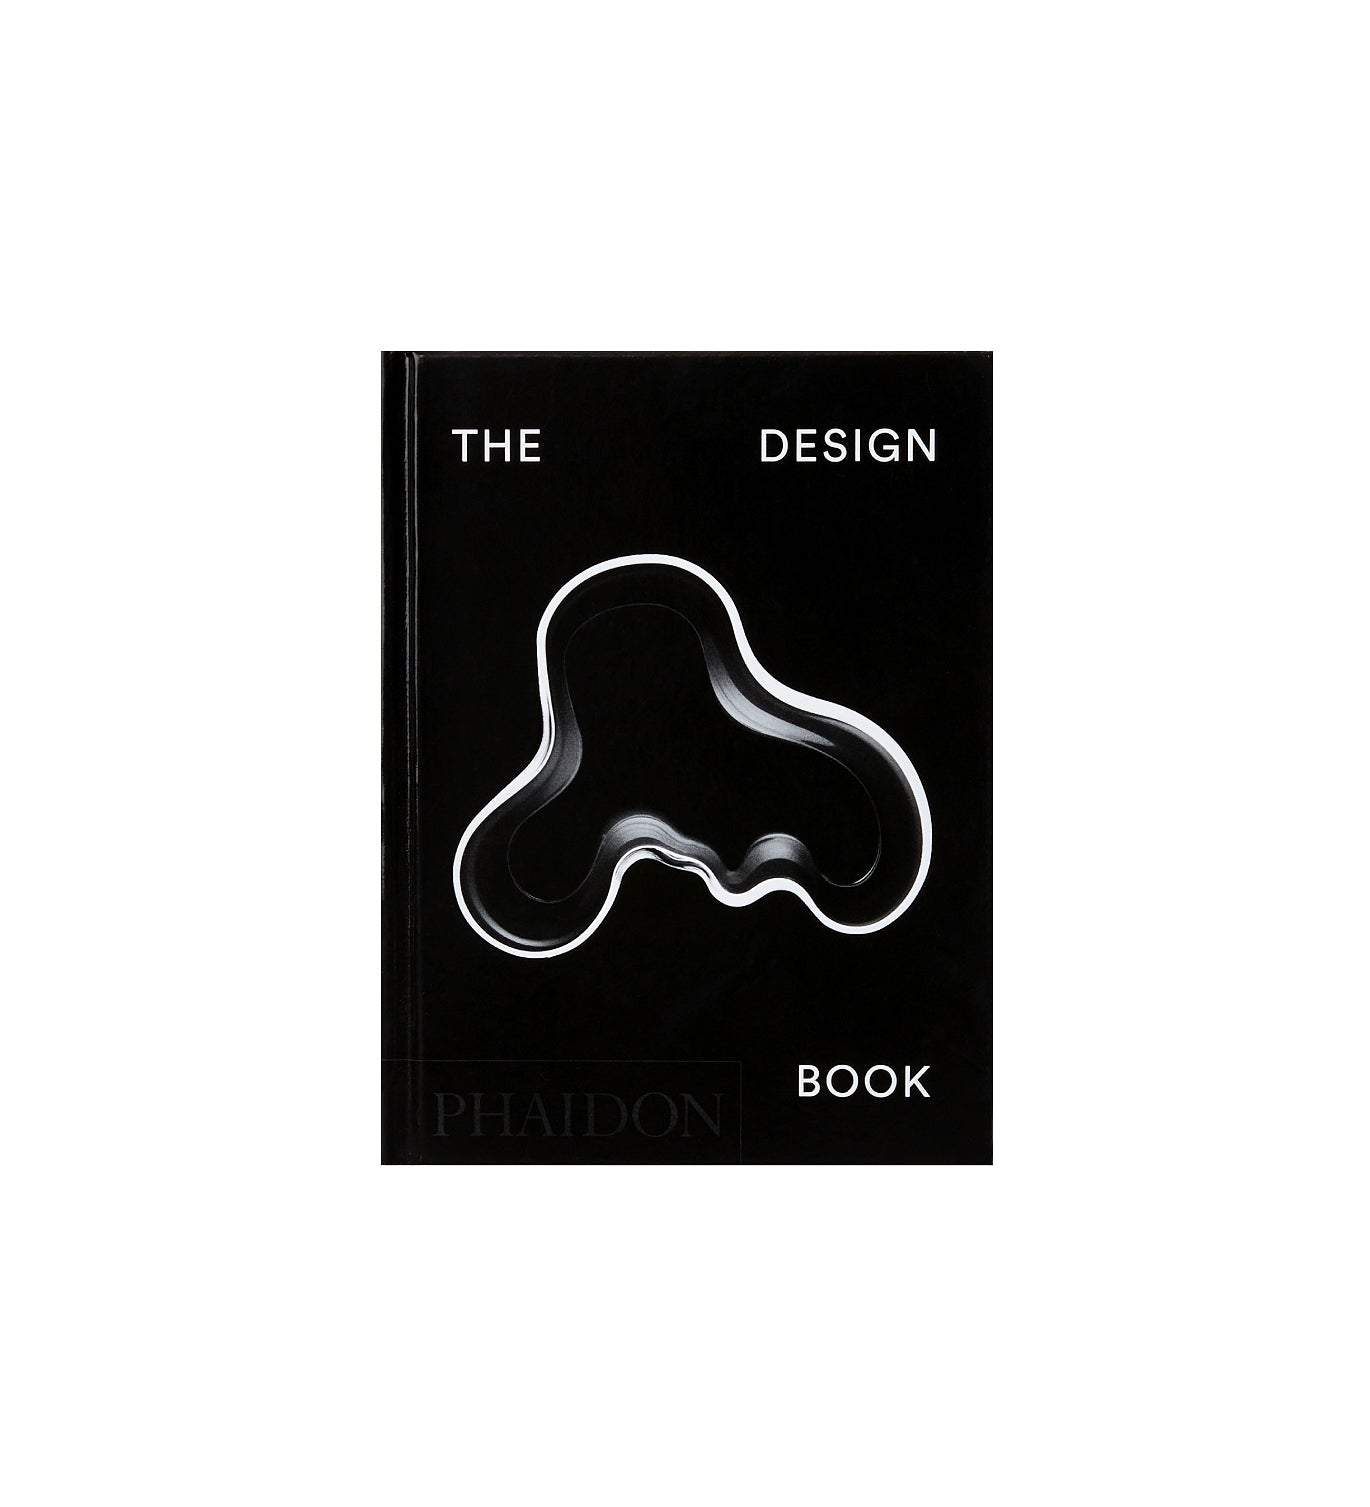 "Le livre de design", éditeurs Phaidon